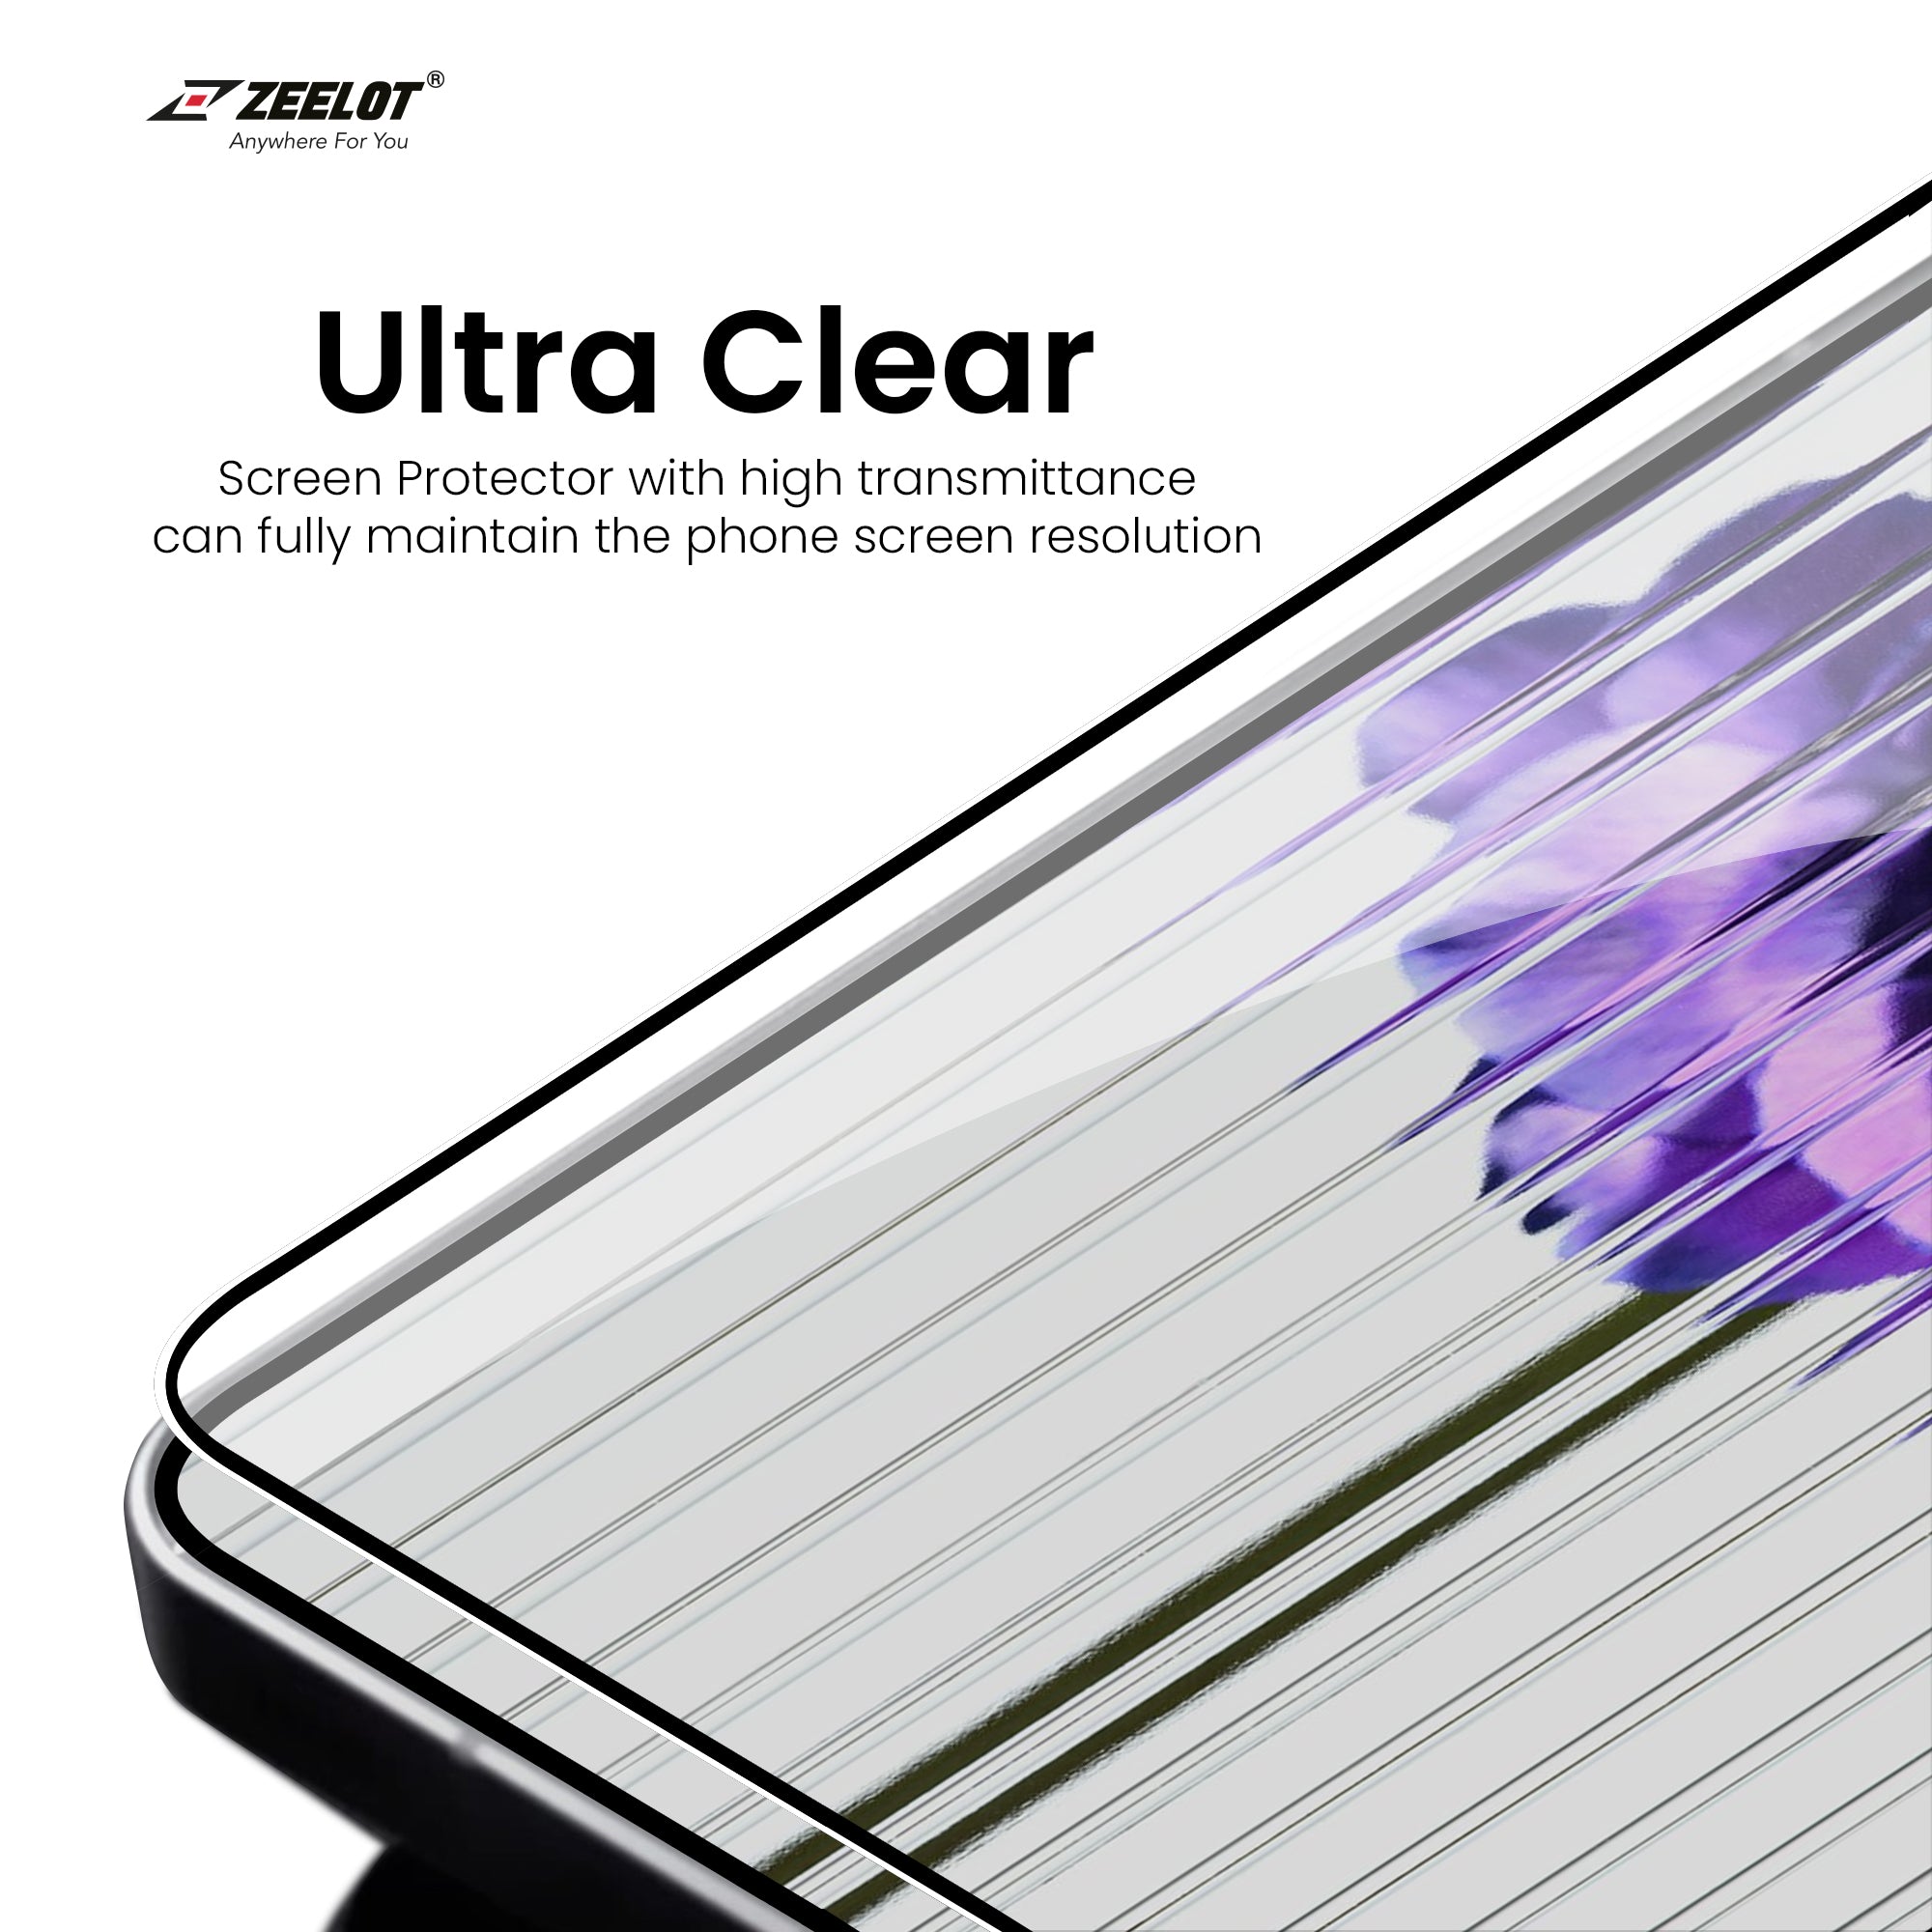 ZEELOT PureGlass 2.5D Tempered Glass Screen Protector for Nothing Phone 1 Screen Protectors ZEELOT 